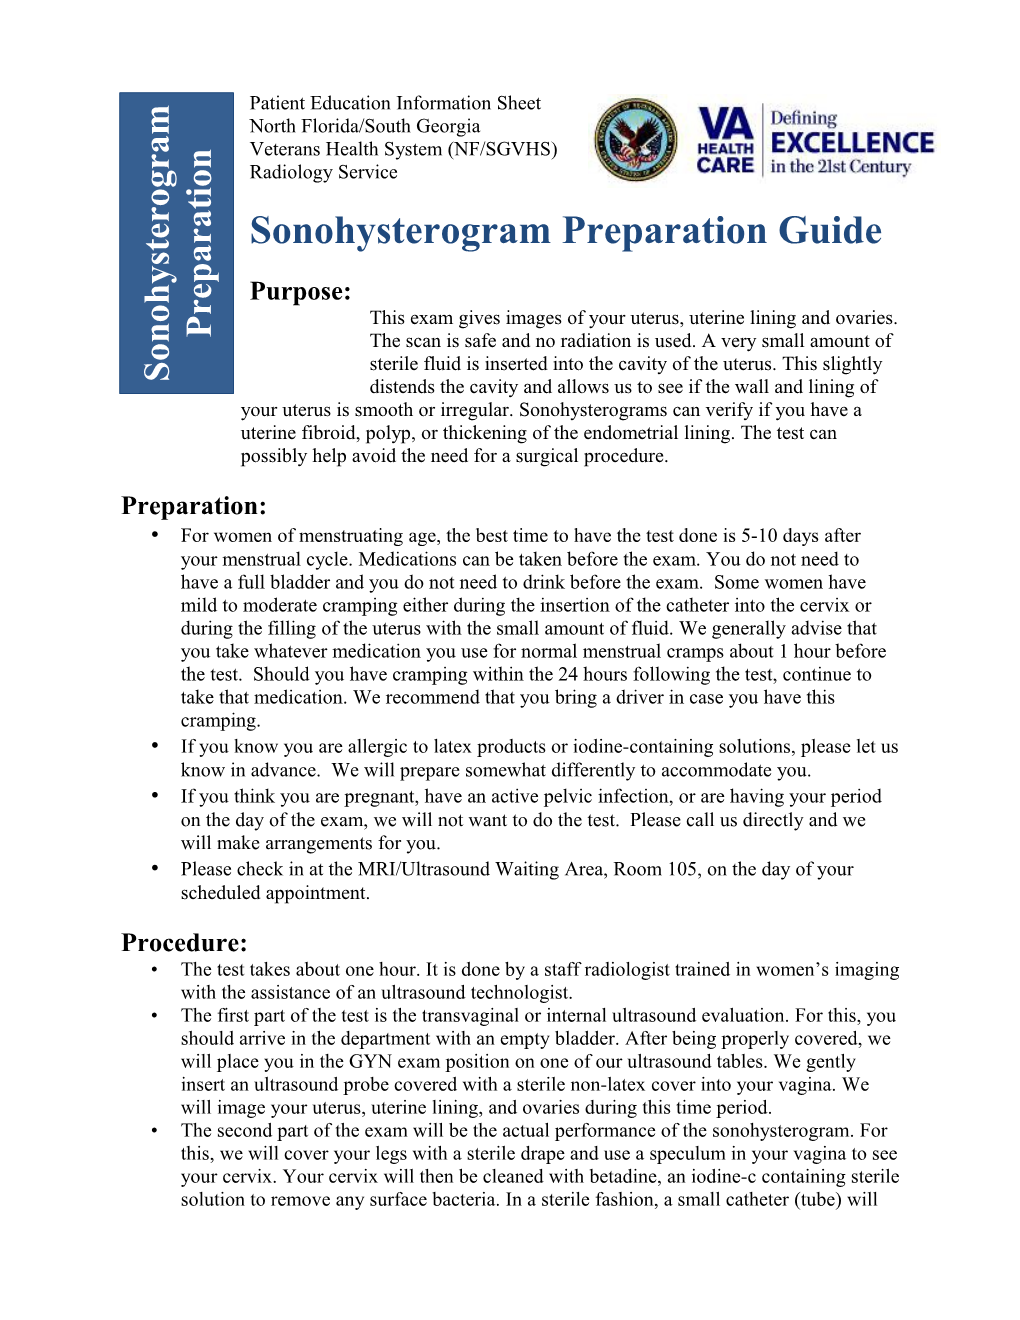 Sonohysterogram Preparation Guide